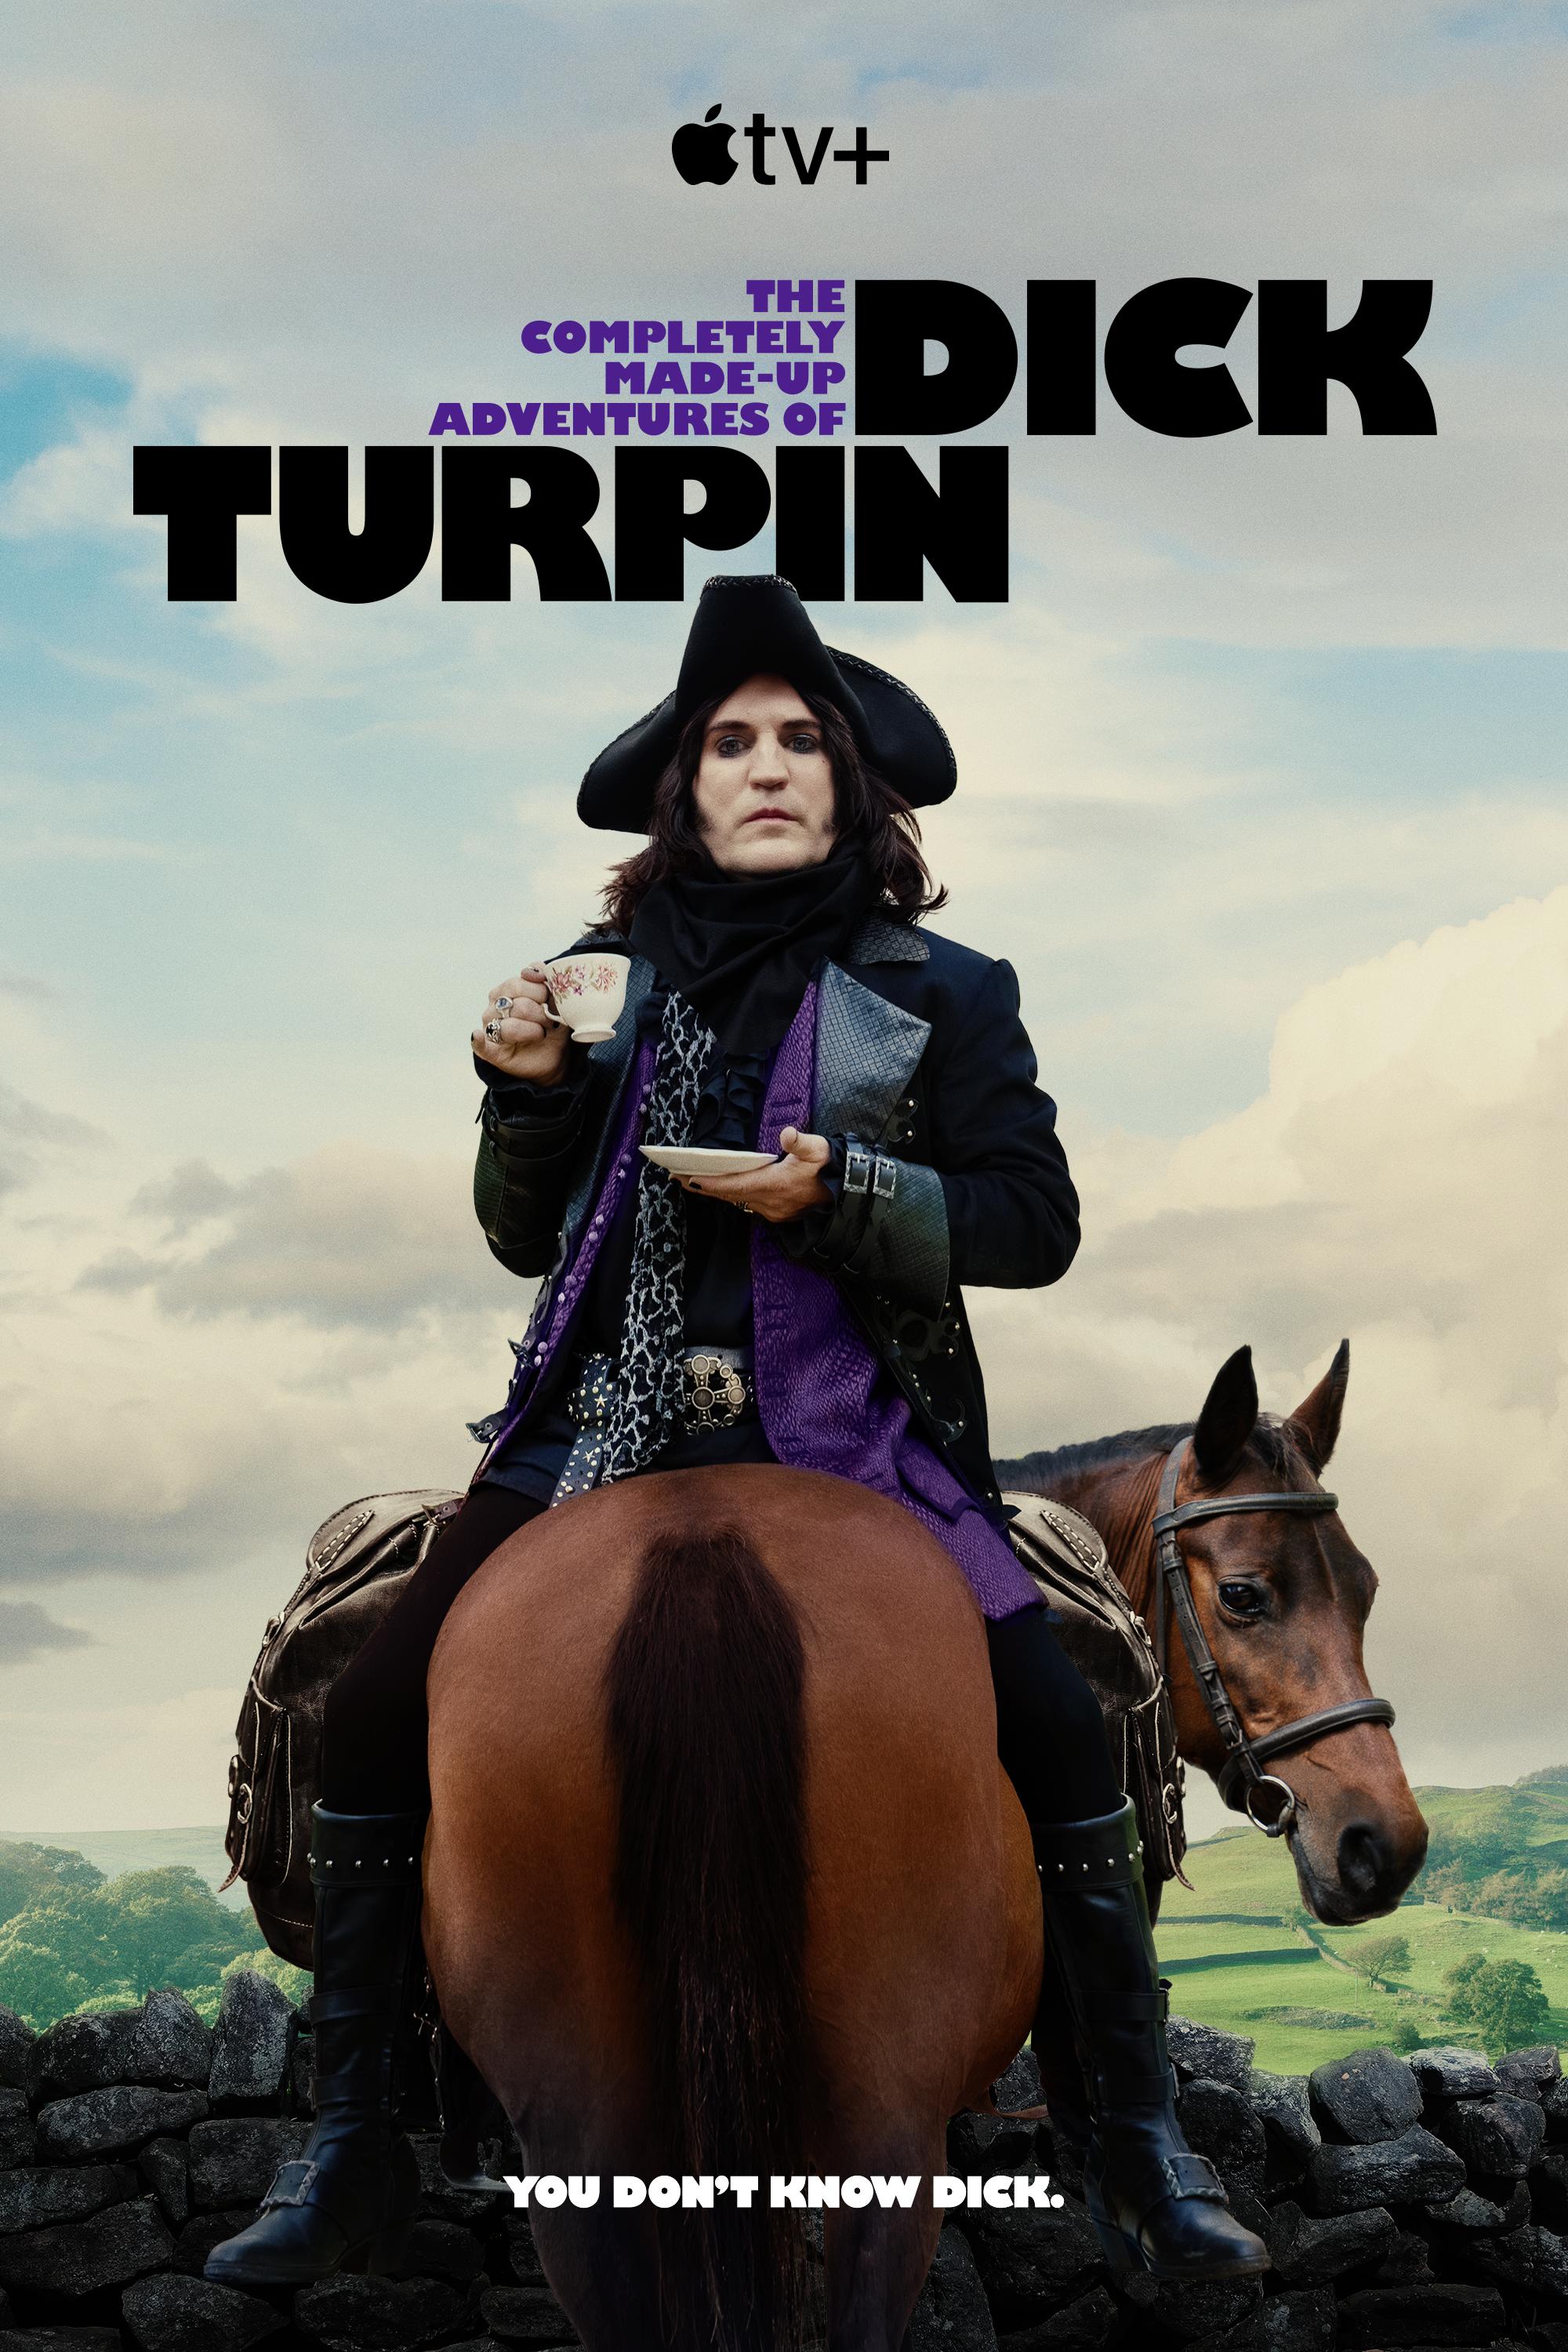 ดูหนังออนไลน์ The Completely Made-Up Adventures of Dick Turpin